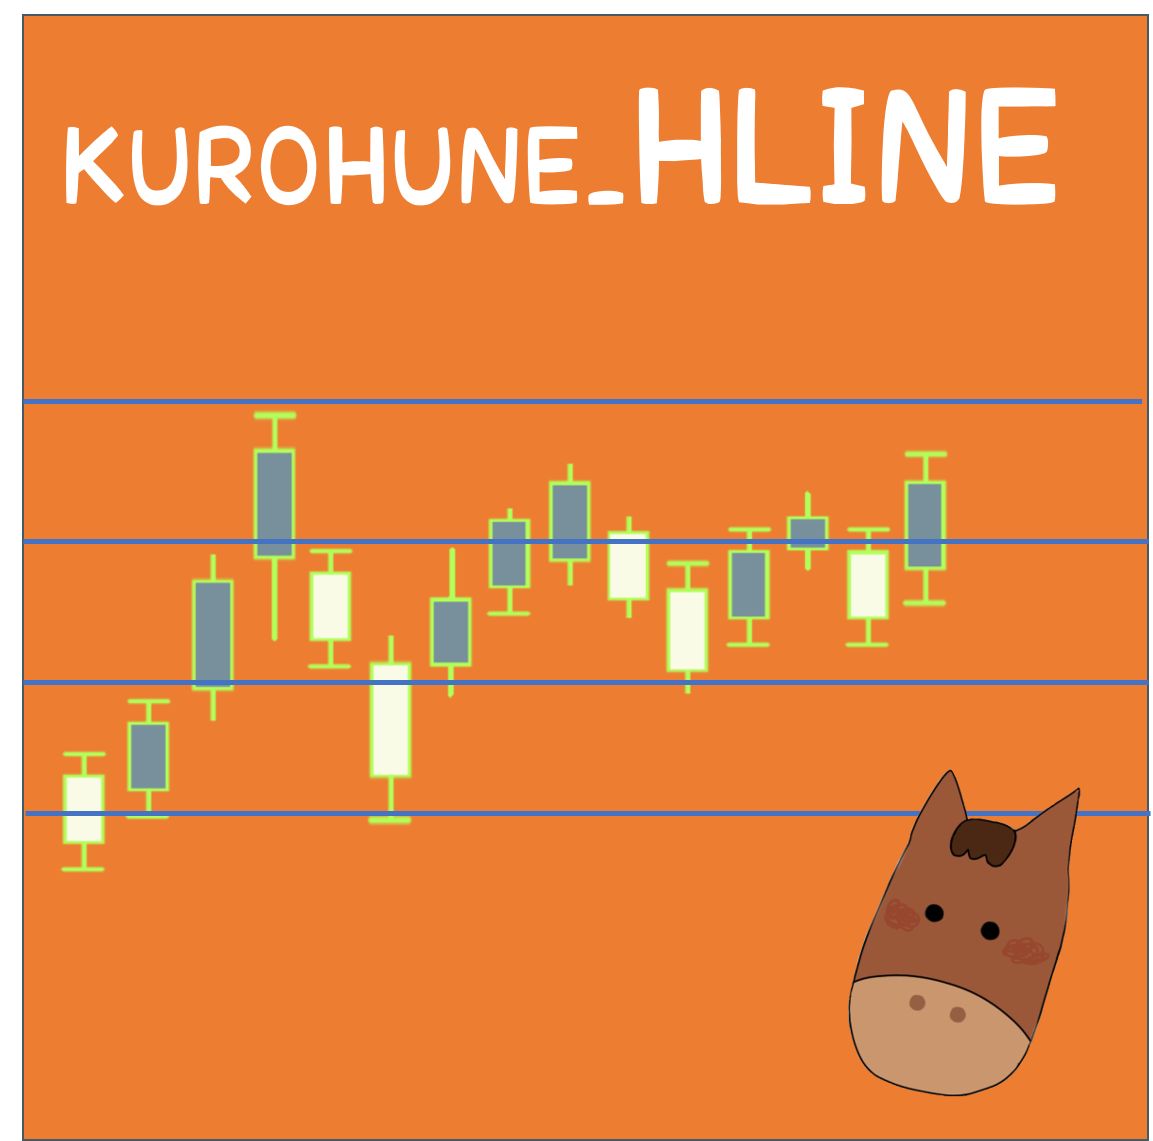 KUROHUNE_HLINE Indicators/E-books